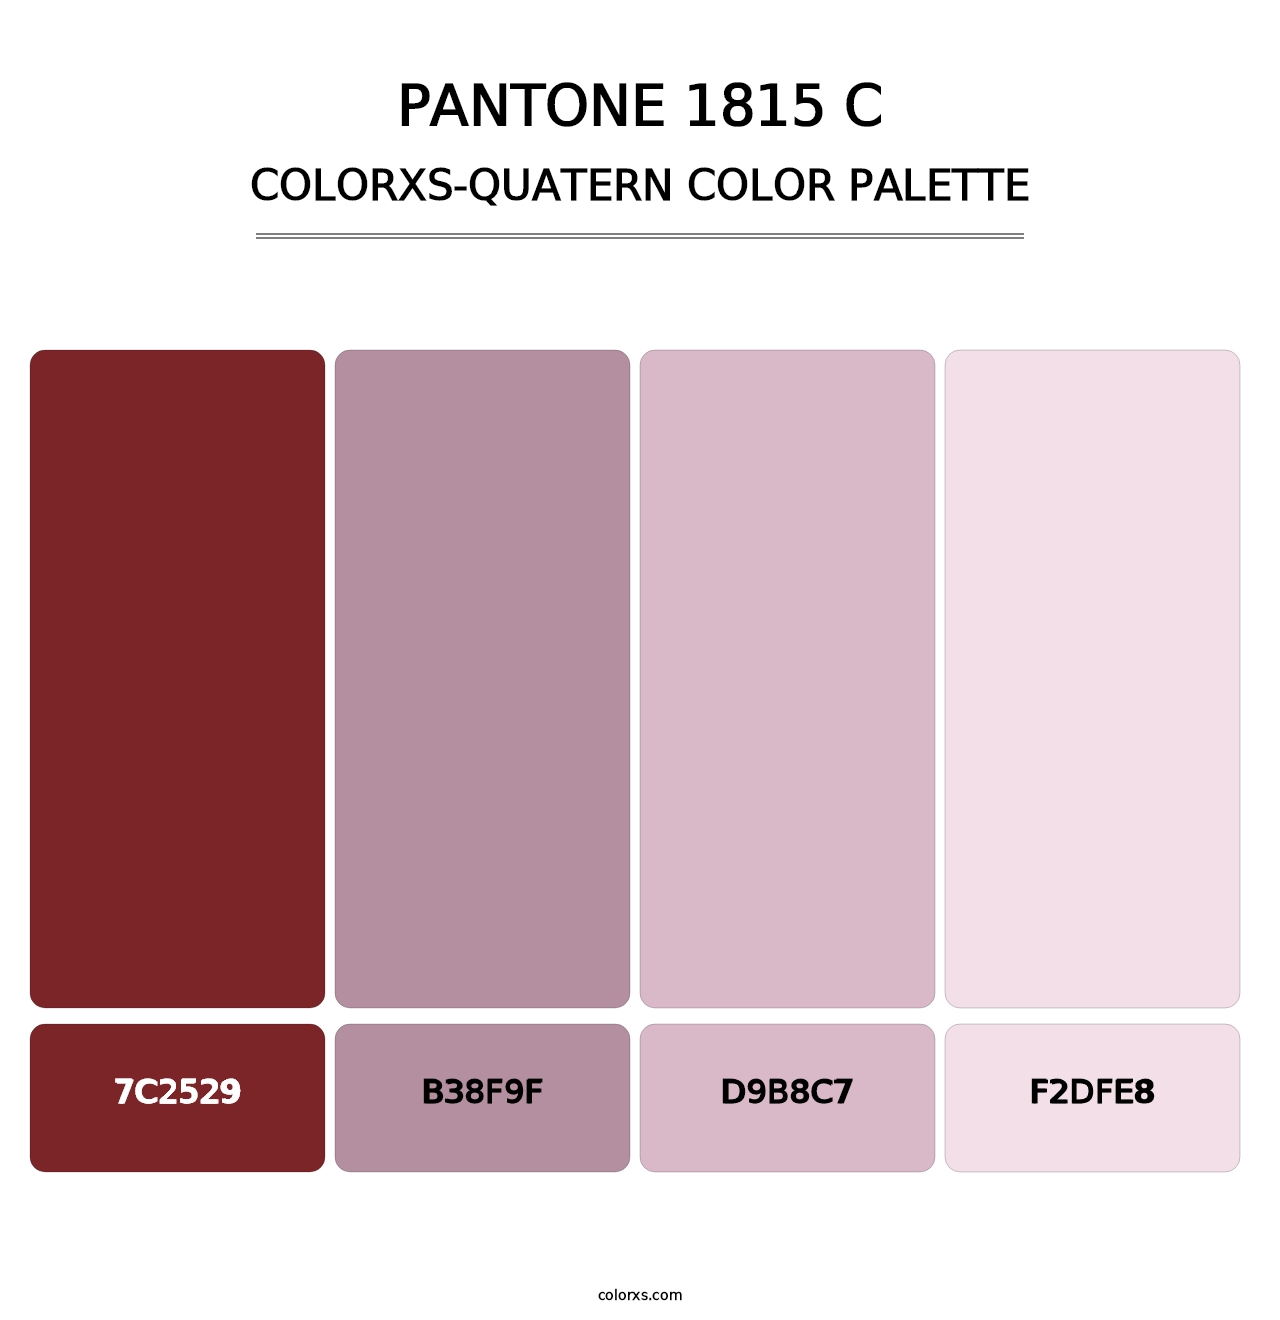 PANTONE 1815 C - Colorxs Quatern Palette